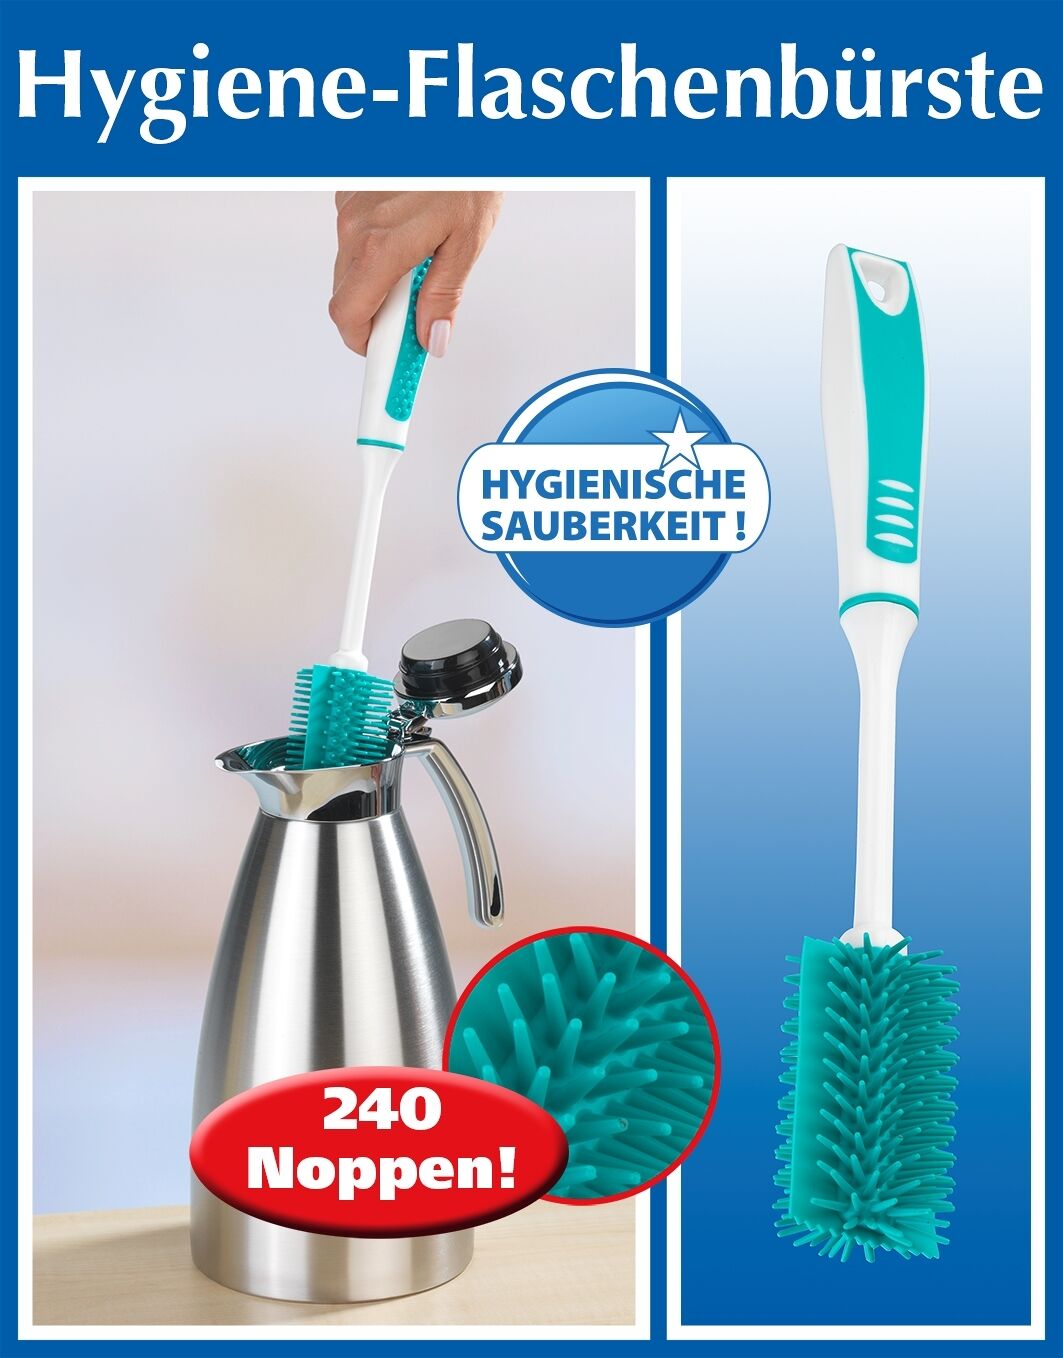 Hygiene-Flaschenbürste